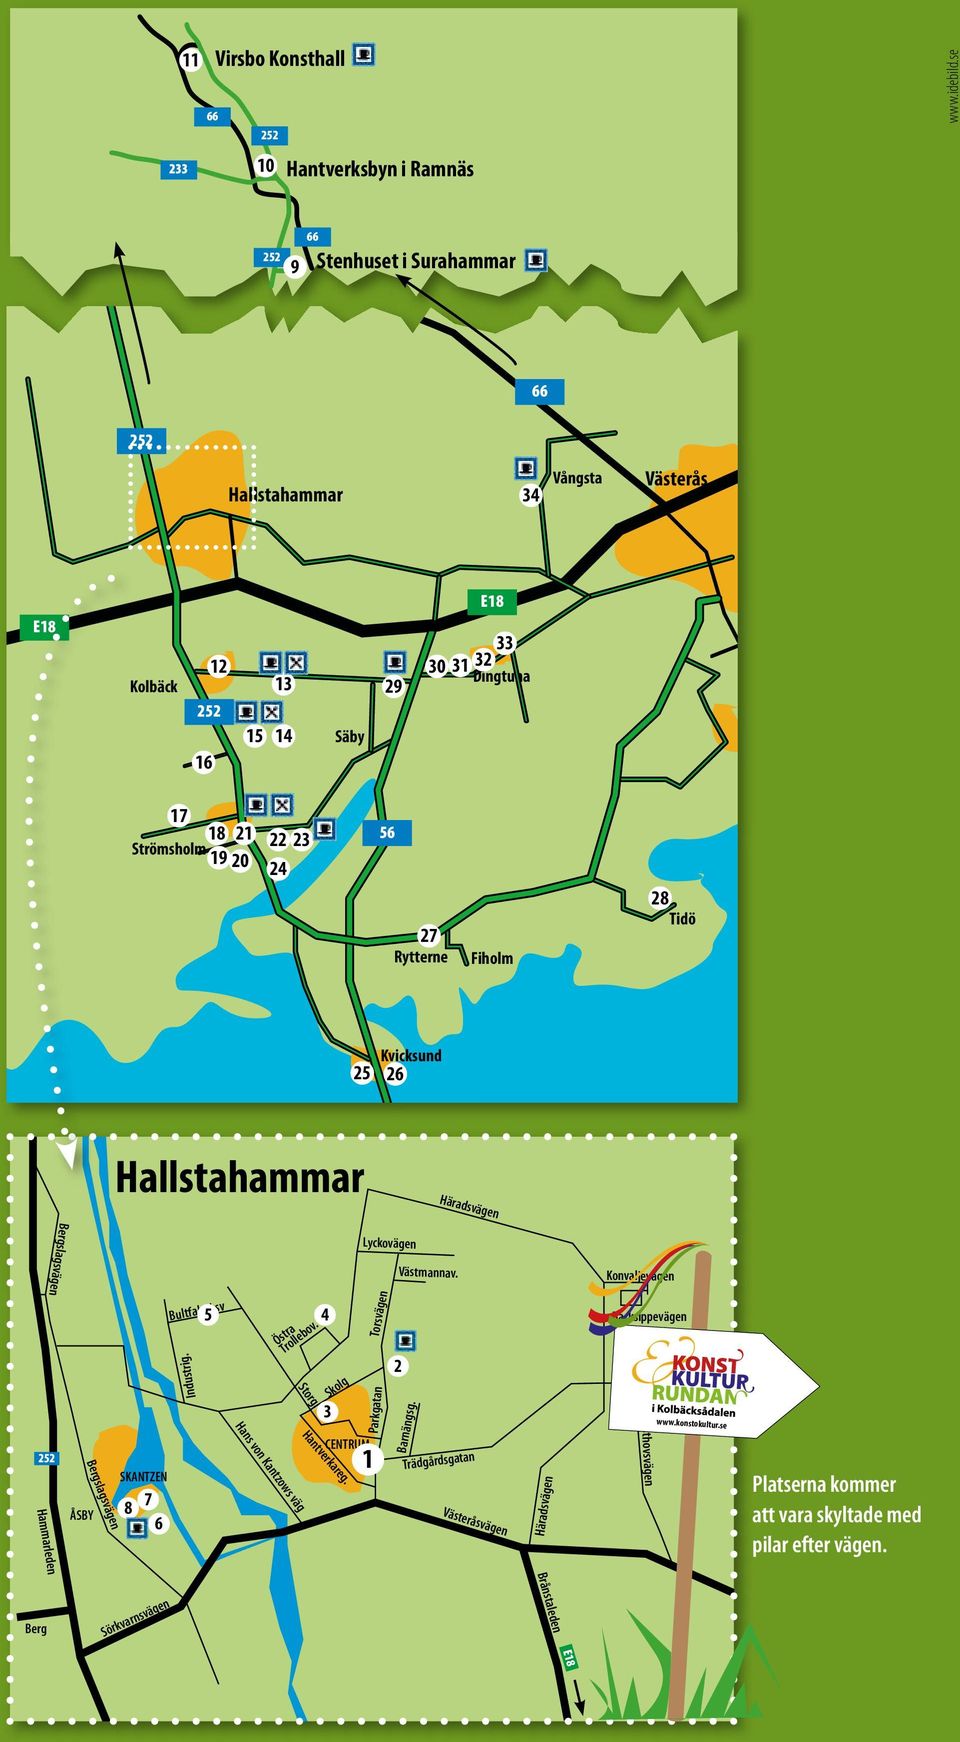 Fiholm 28 Tidö 25 Kvicksund 26 Hallstahammar Häradsvägen Hammarleden Bergslagsvägen ÅSBY Bergslagsvägen SKANTZEN 8 7 6 Industrig.